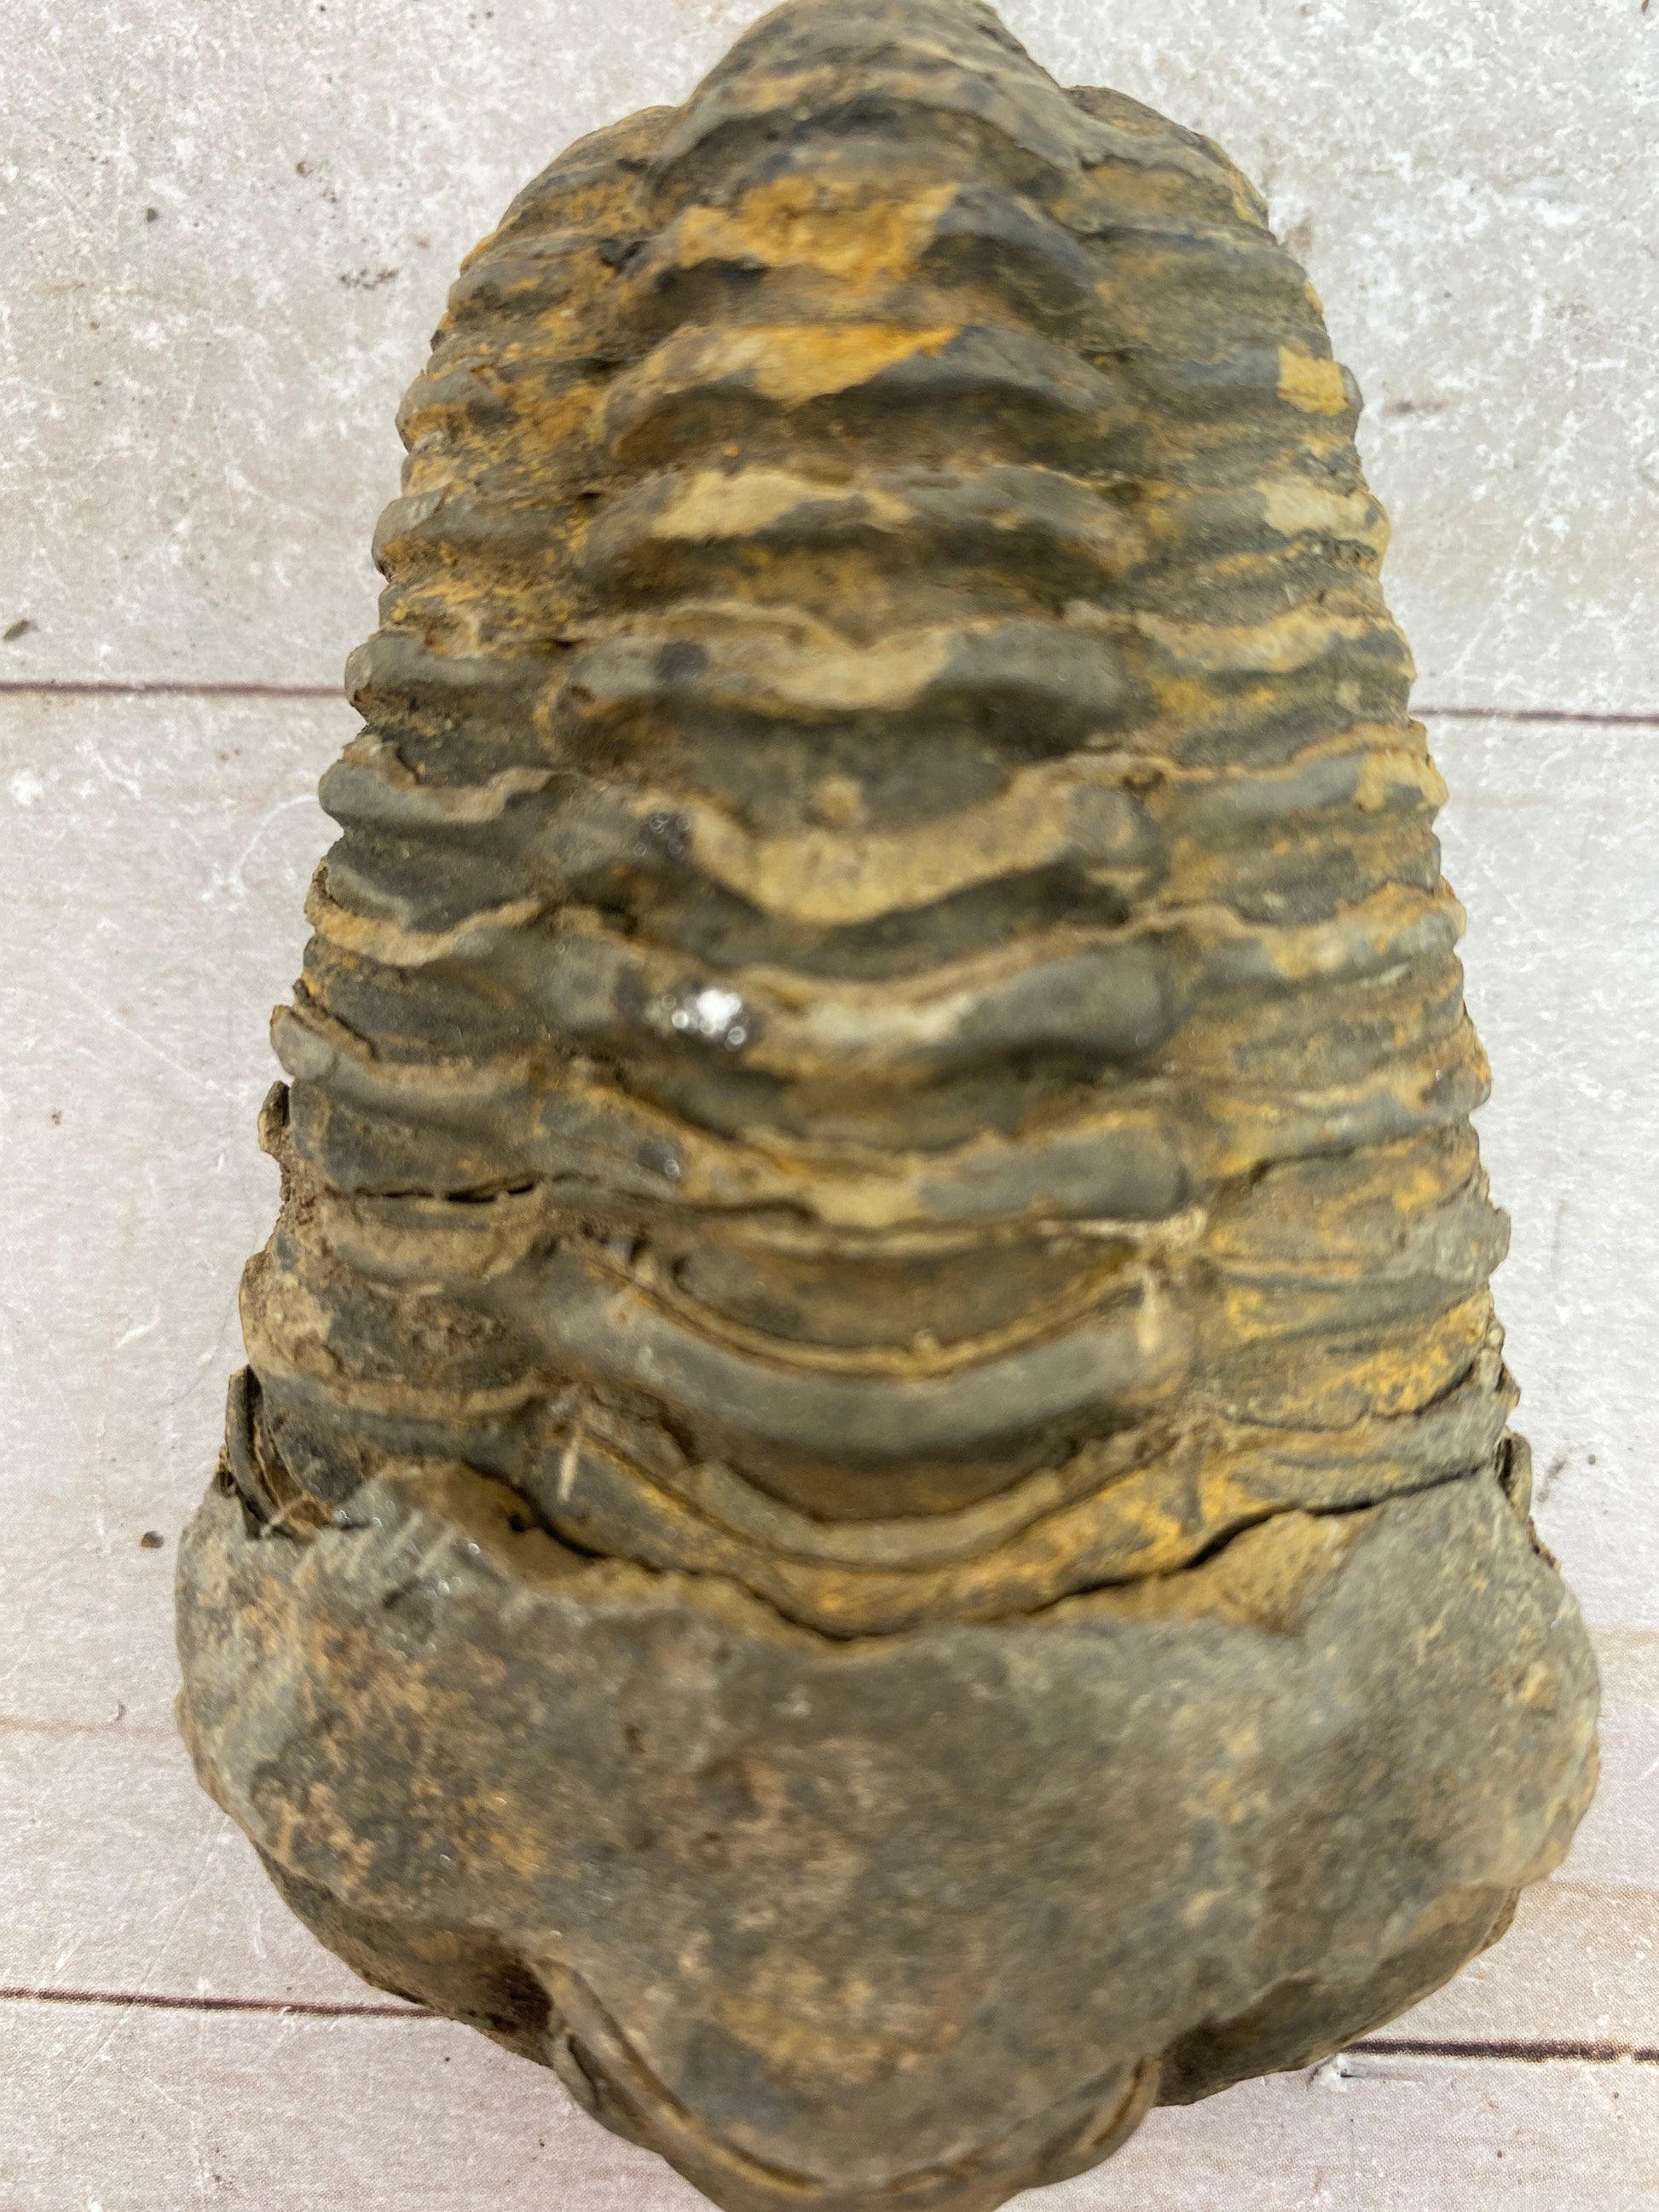 Trilobite fossil, Calymen trilobite